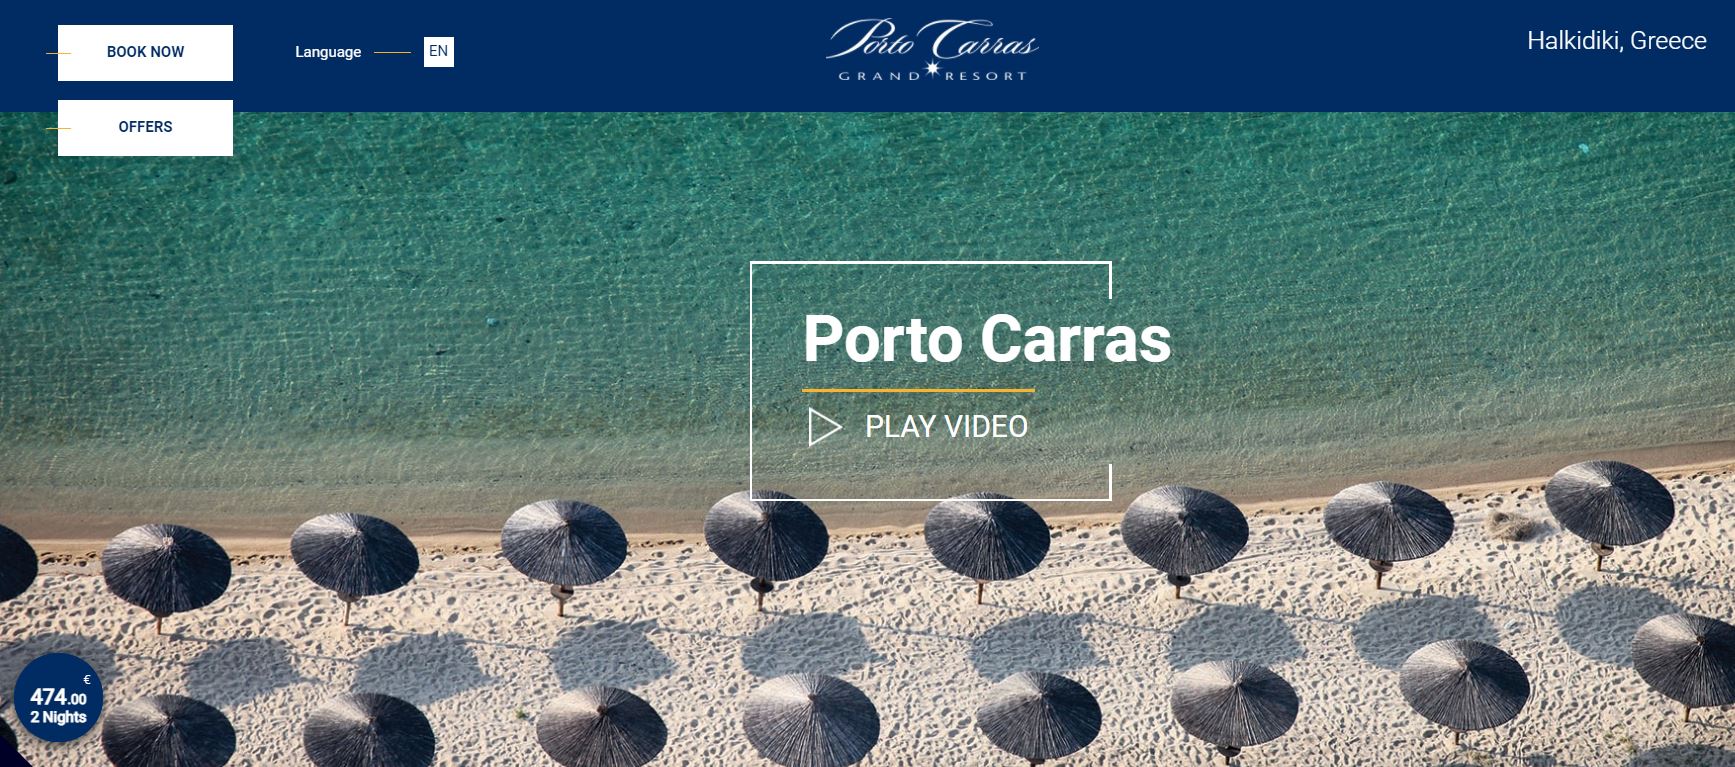 porto_carras.jpg